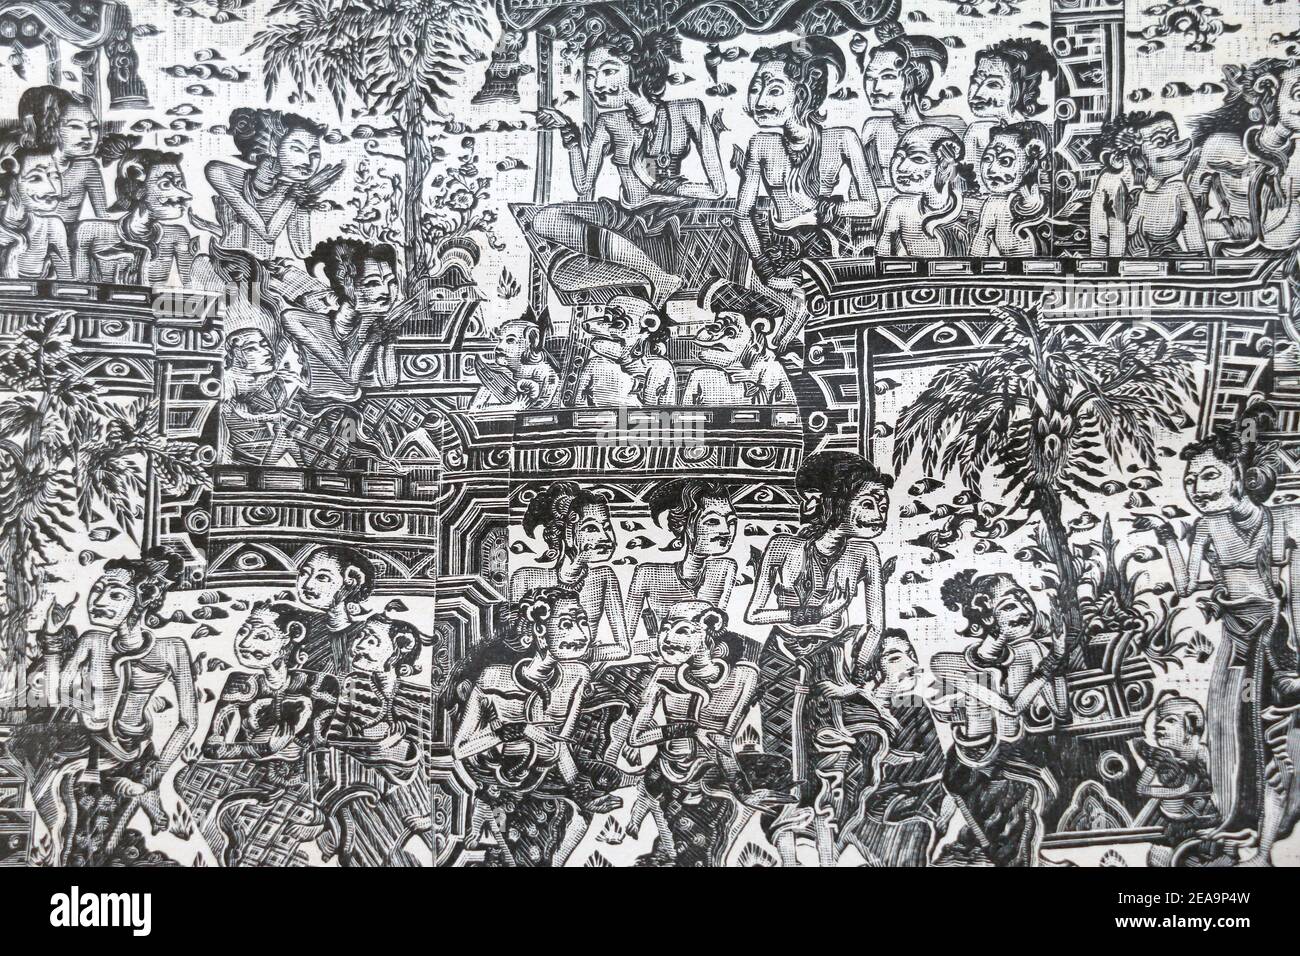 Images de la mythologie indienne du temple de Klungkung, dans le sud-est de Bali. Gravure du XIXe siècle. Banque D'Images